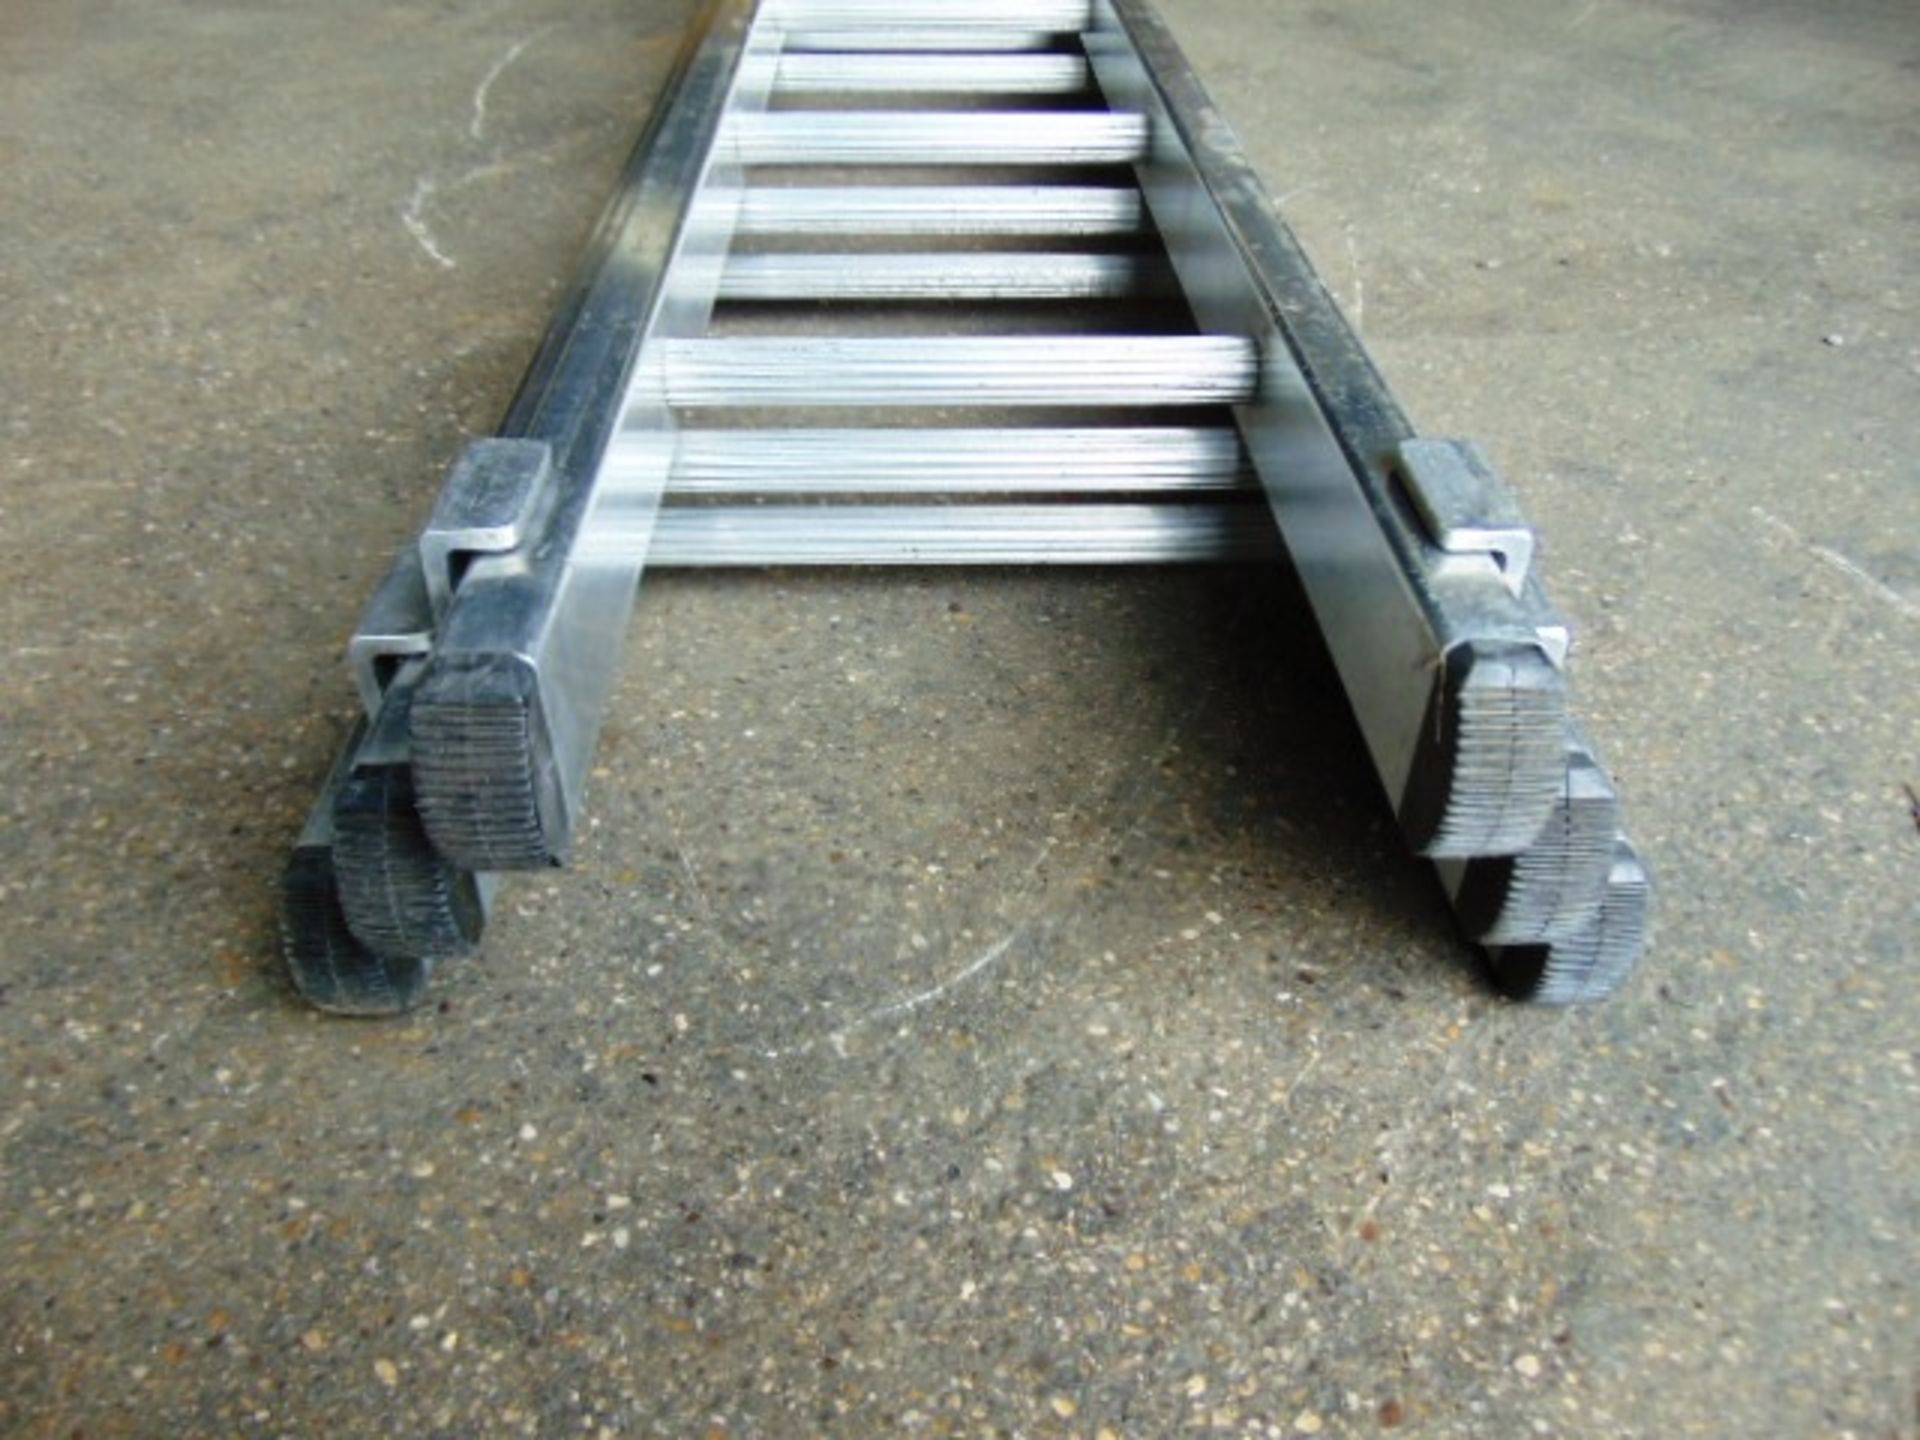 Bayley 3 Section Aluminium Ladder - Image 3 of 5